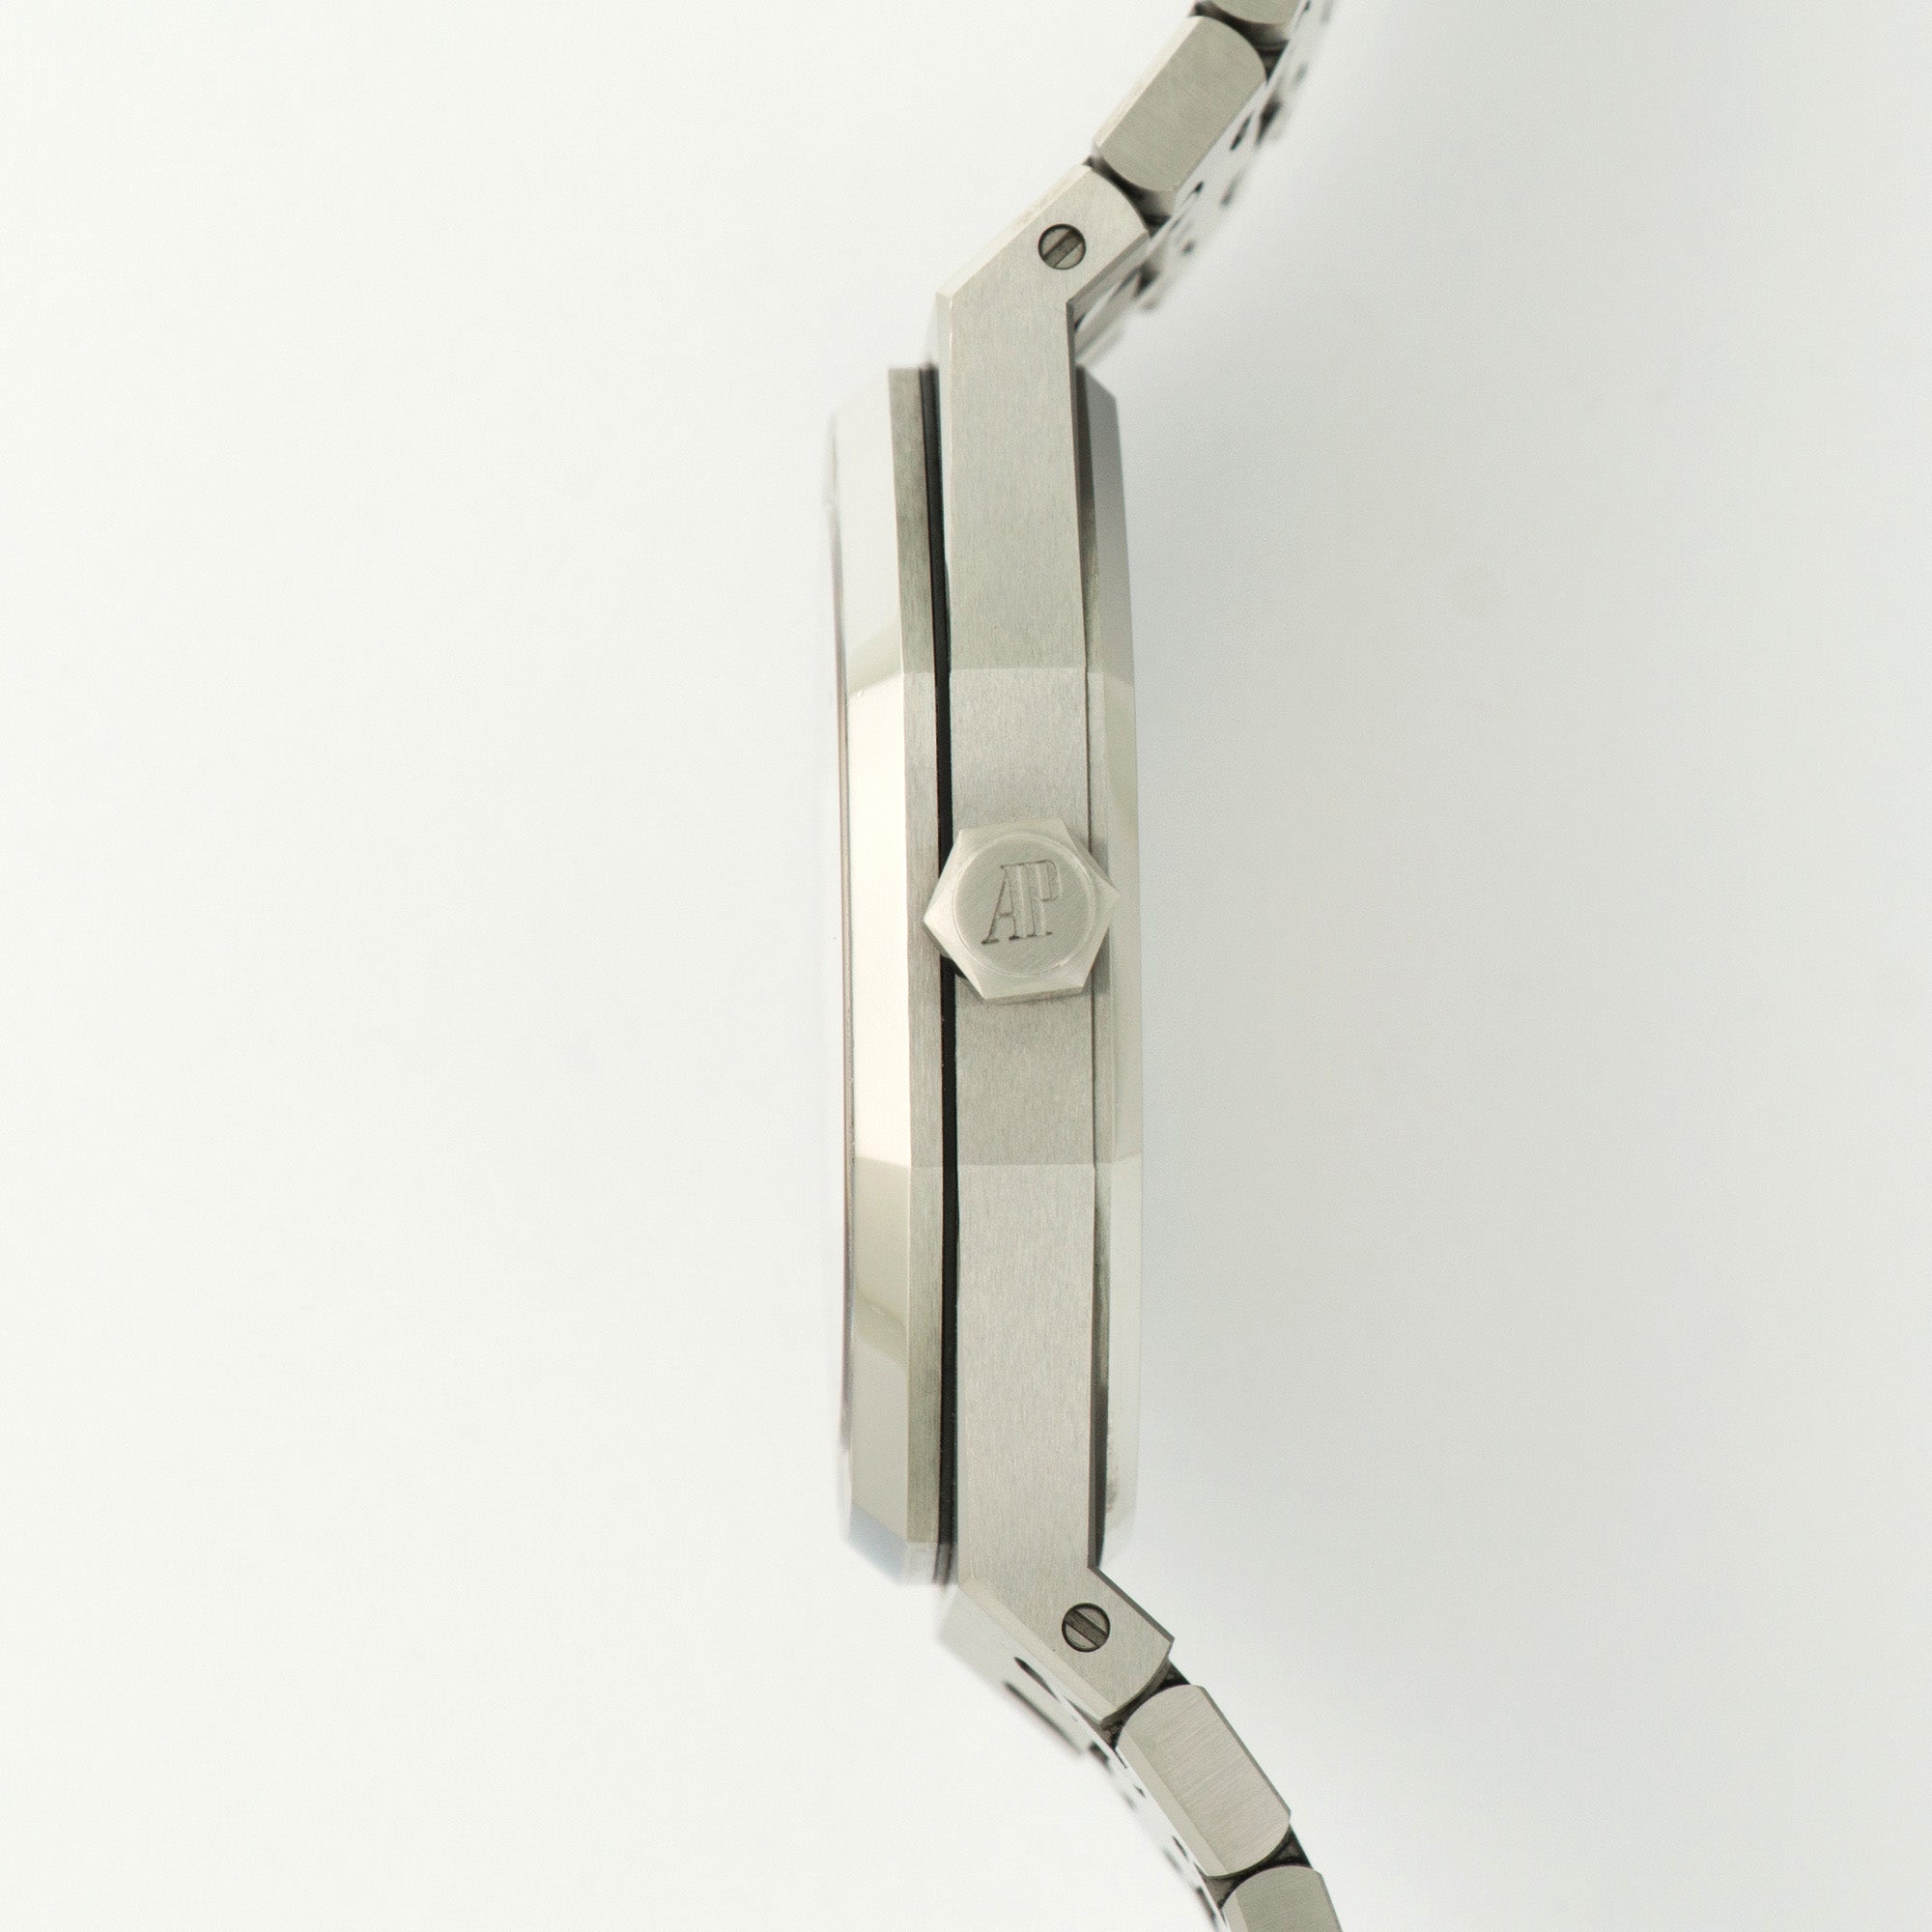 Audemars Piguet - Audemars Piguet Royal Oak 41mm Watch Ref. 15400 - The Keystone Watches